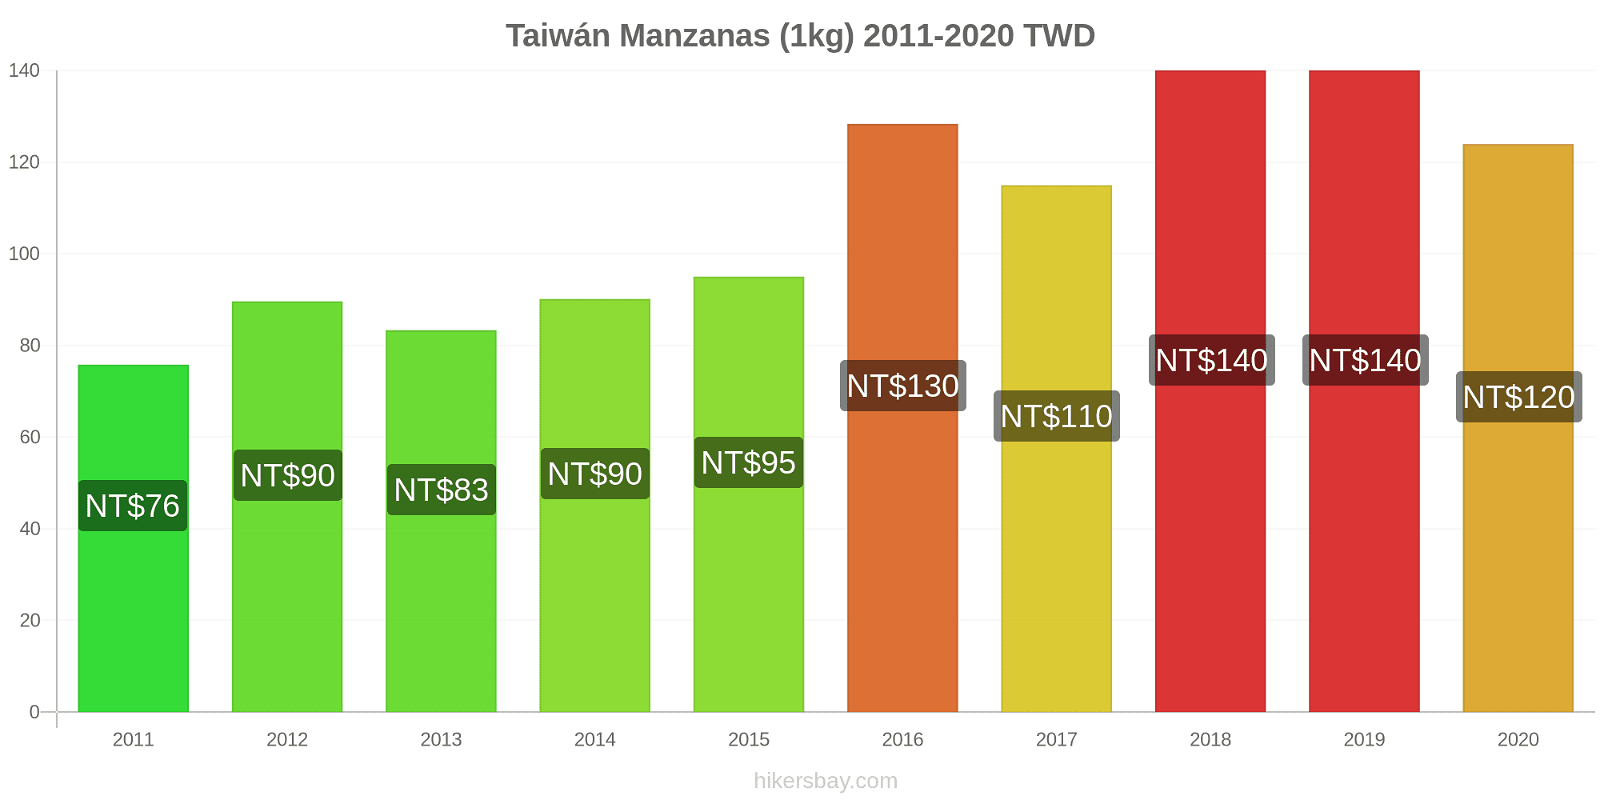 Taiwán cambios de precios Manzanas (1kg) hikersbay.com